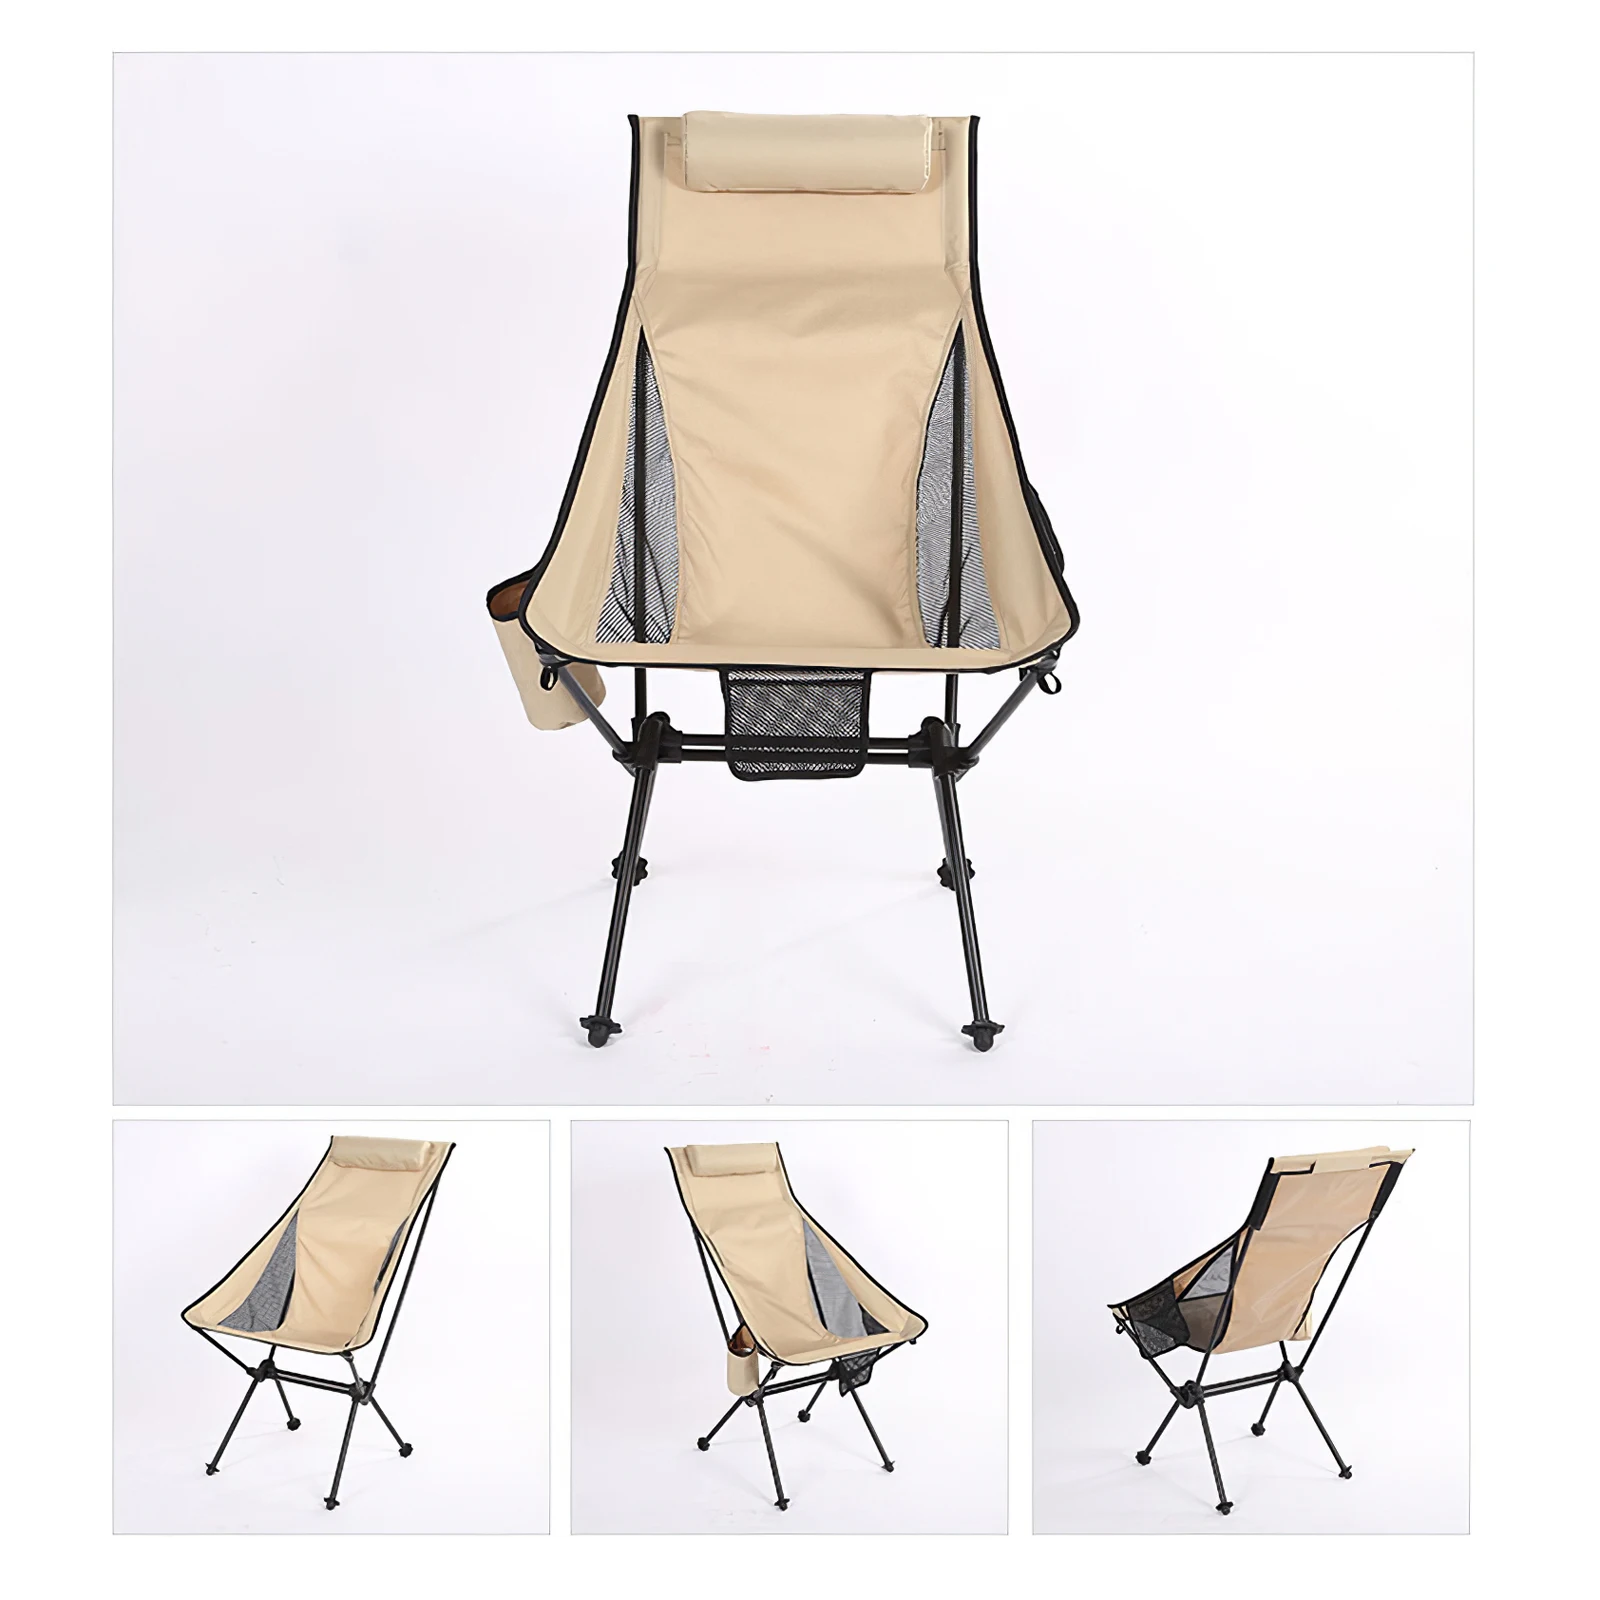 저렴한 휴대용 캠핑 의자 여행 초경량 접이식 의자, 고하중 야외 해변 하이킹 피크닉 바베큐 좌석 낚시 도구